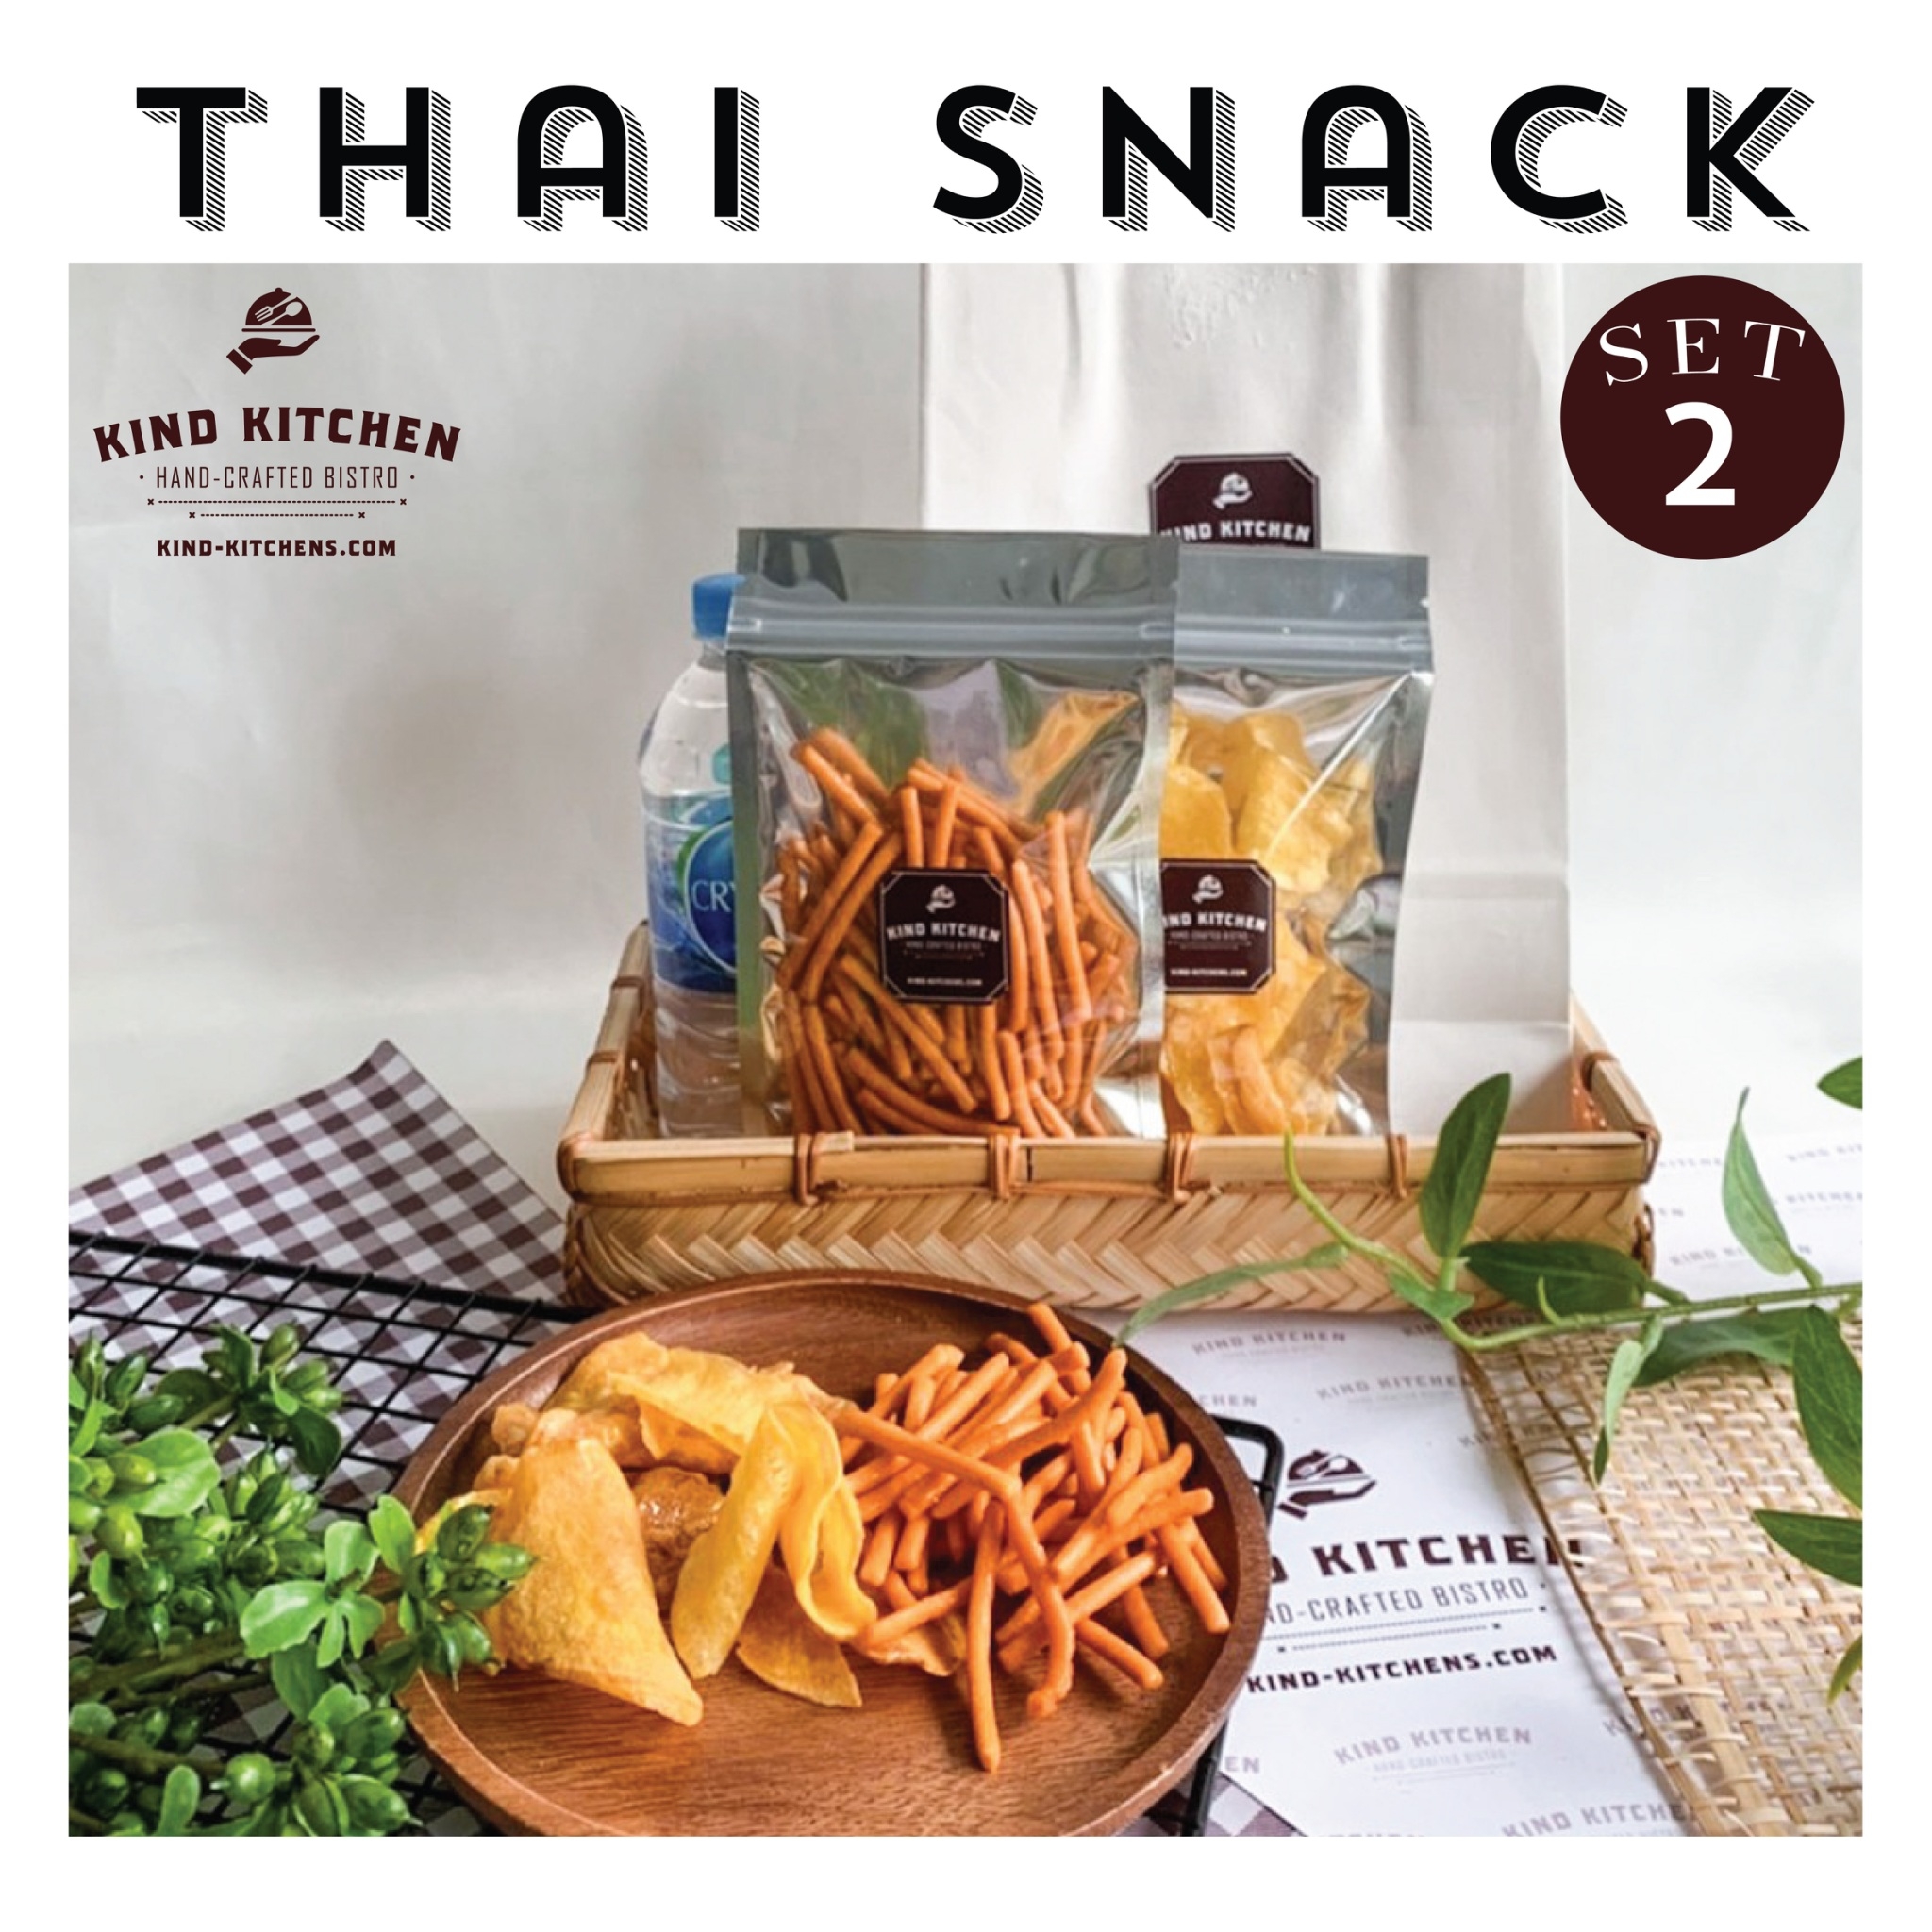 ขนมอบกรอบ Thai Snack 2ชนิด พร้อมน้ำและถุง  Set 2 (เลือกขนมได้ 2 ชนิด)